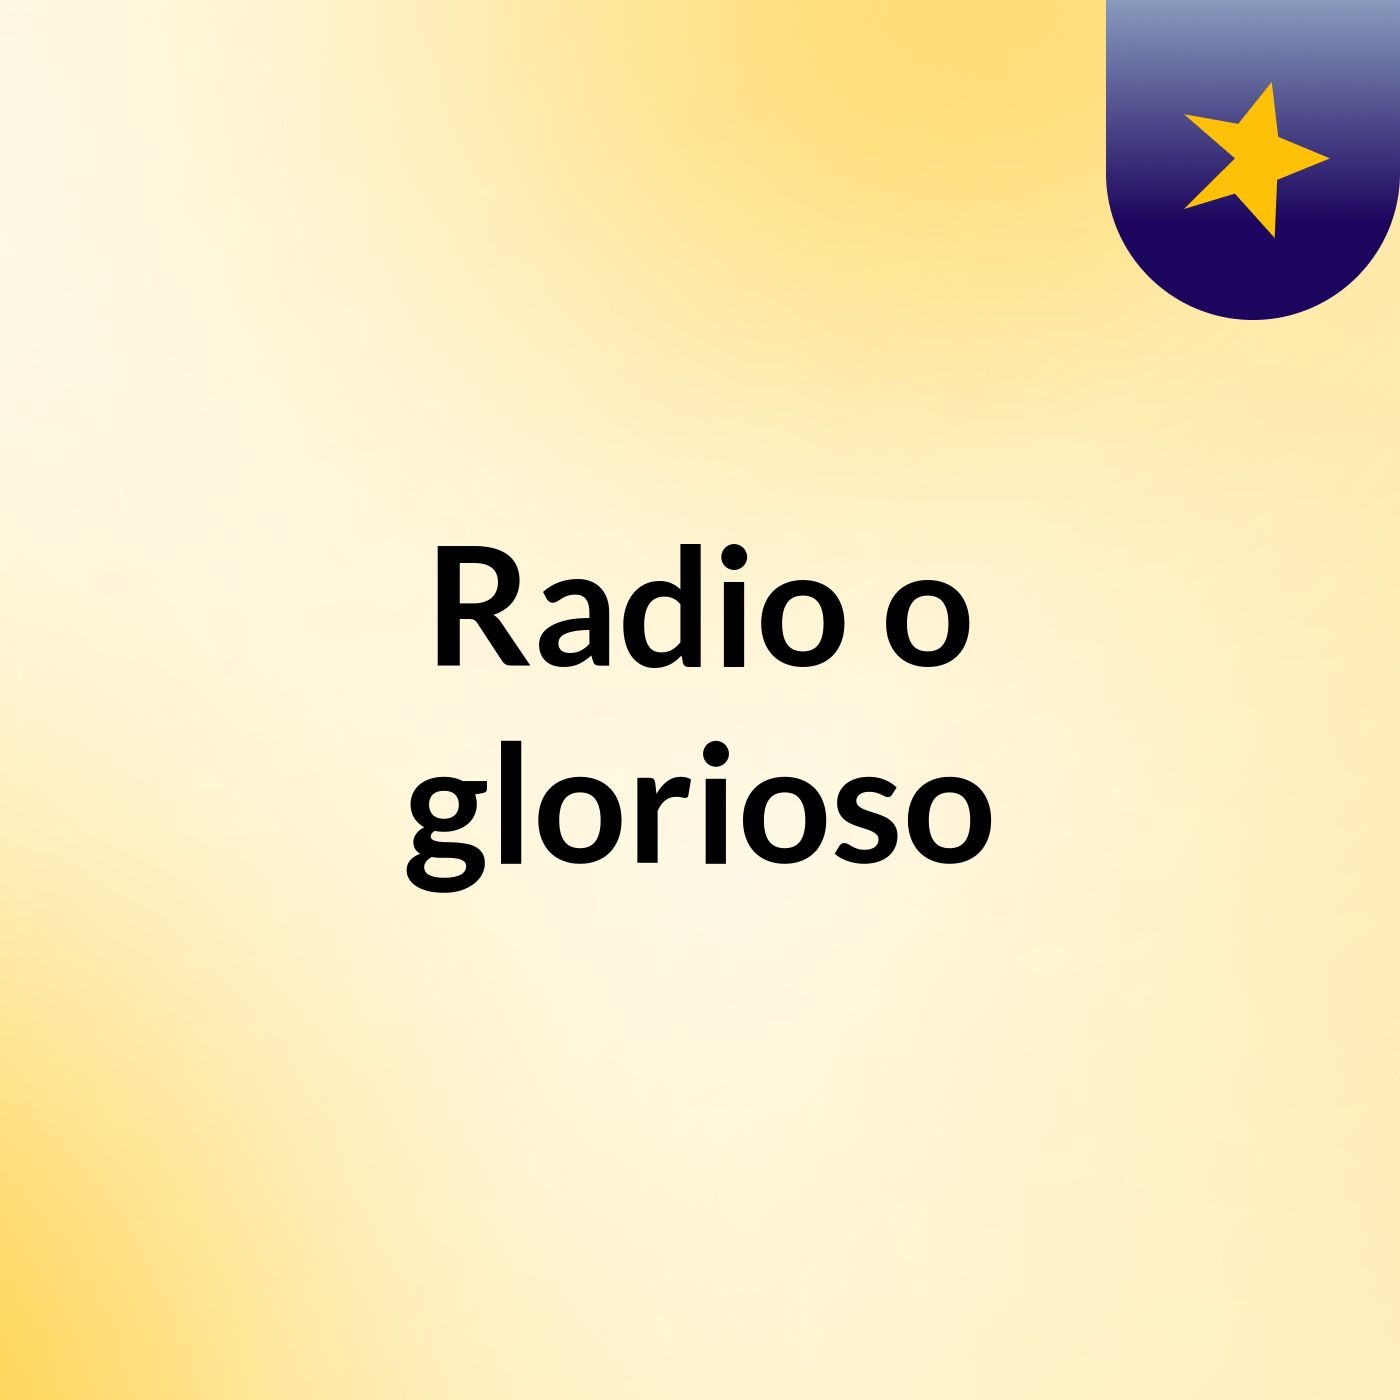 Radio o glorioso